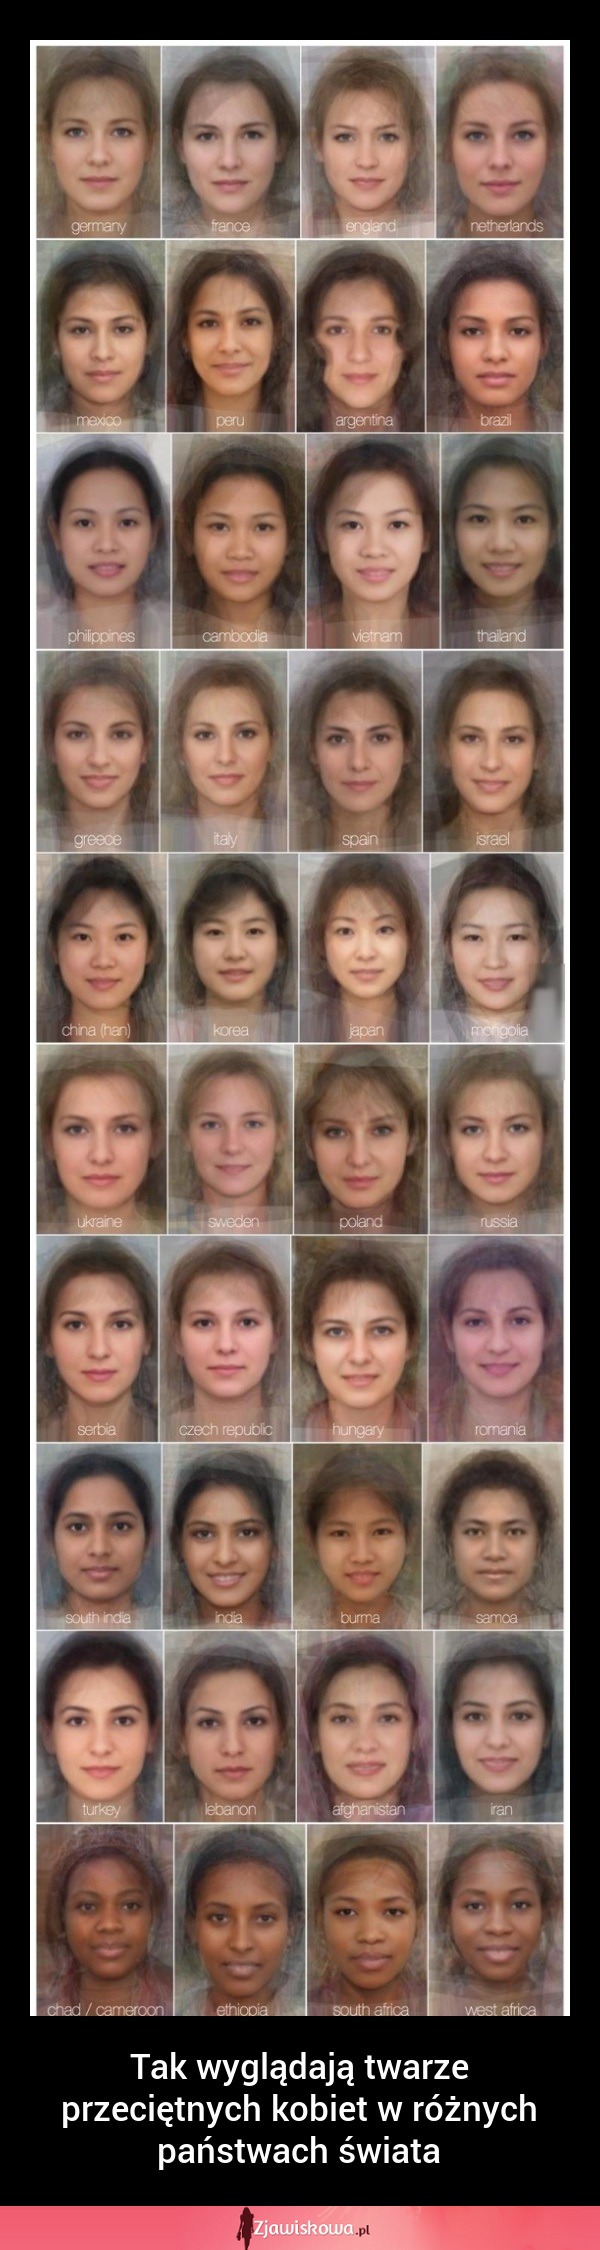 Tak wyglądają twarze przeciętnych kobiet w różnych państwach świata! ŁADNE POLKI???